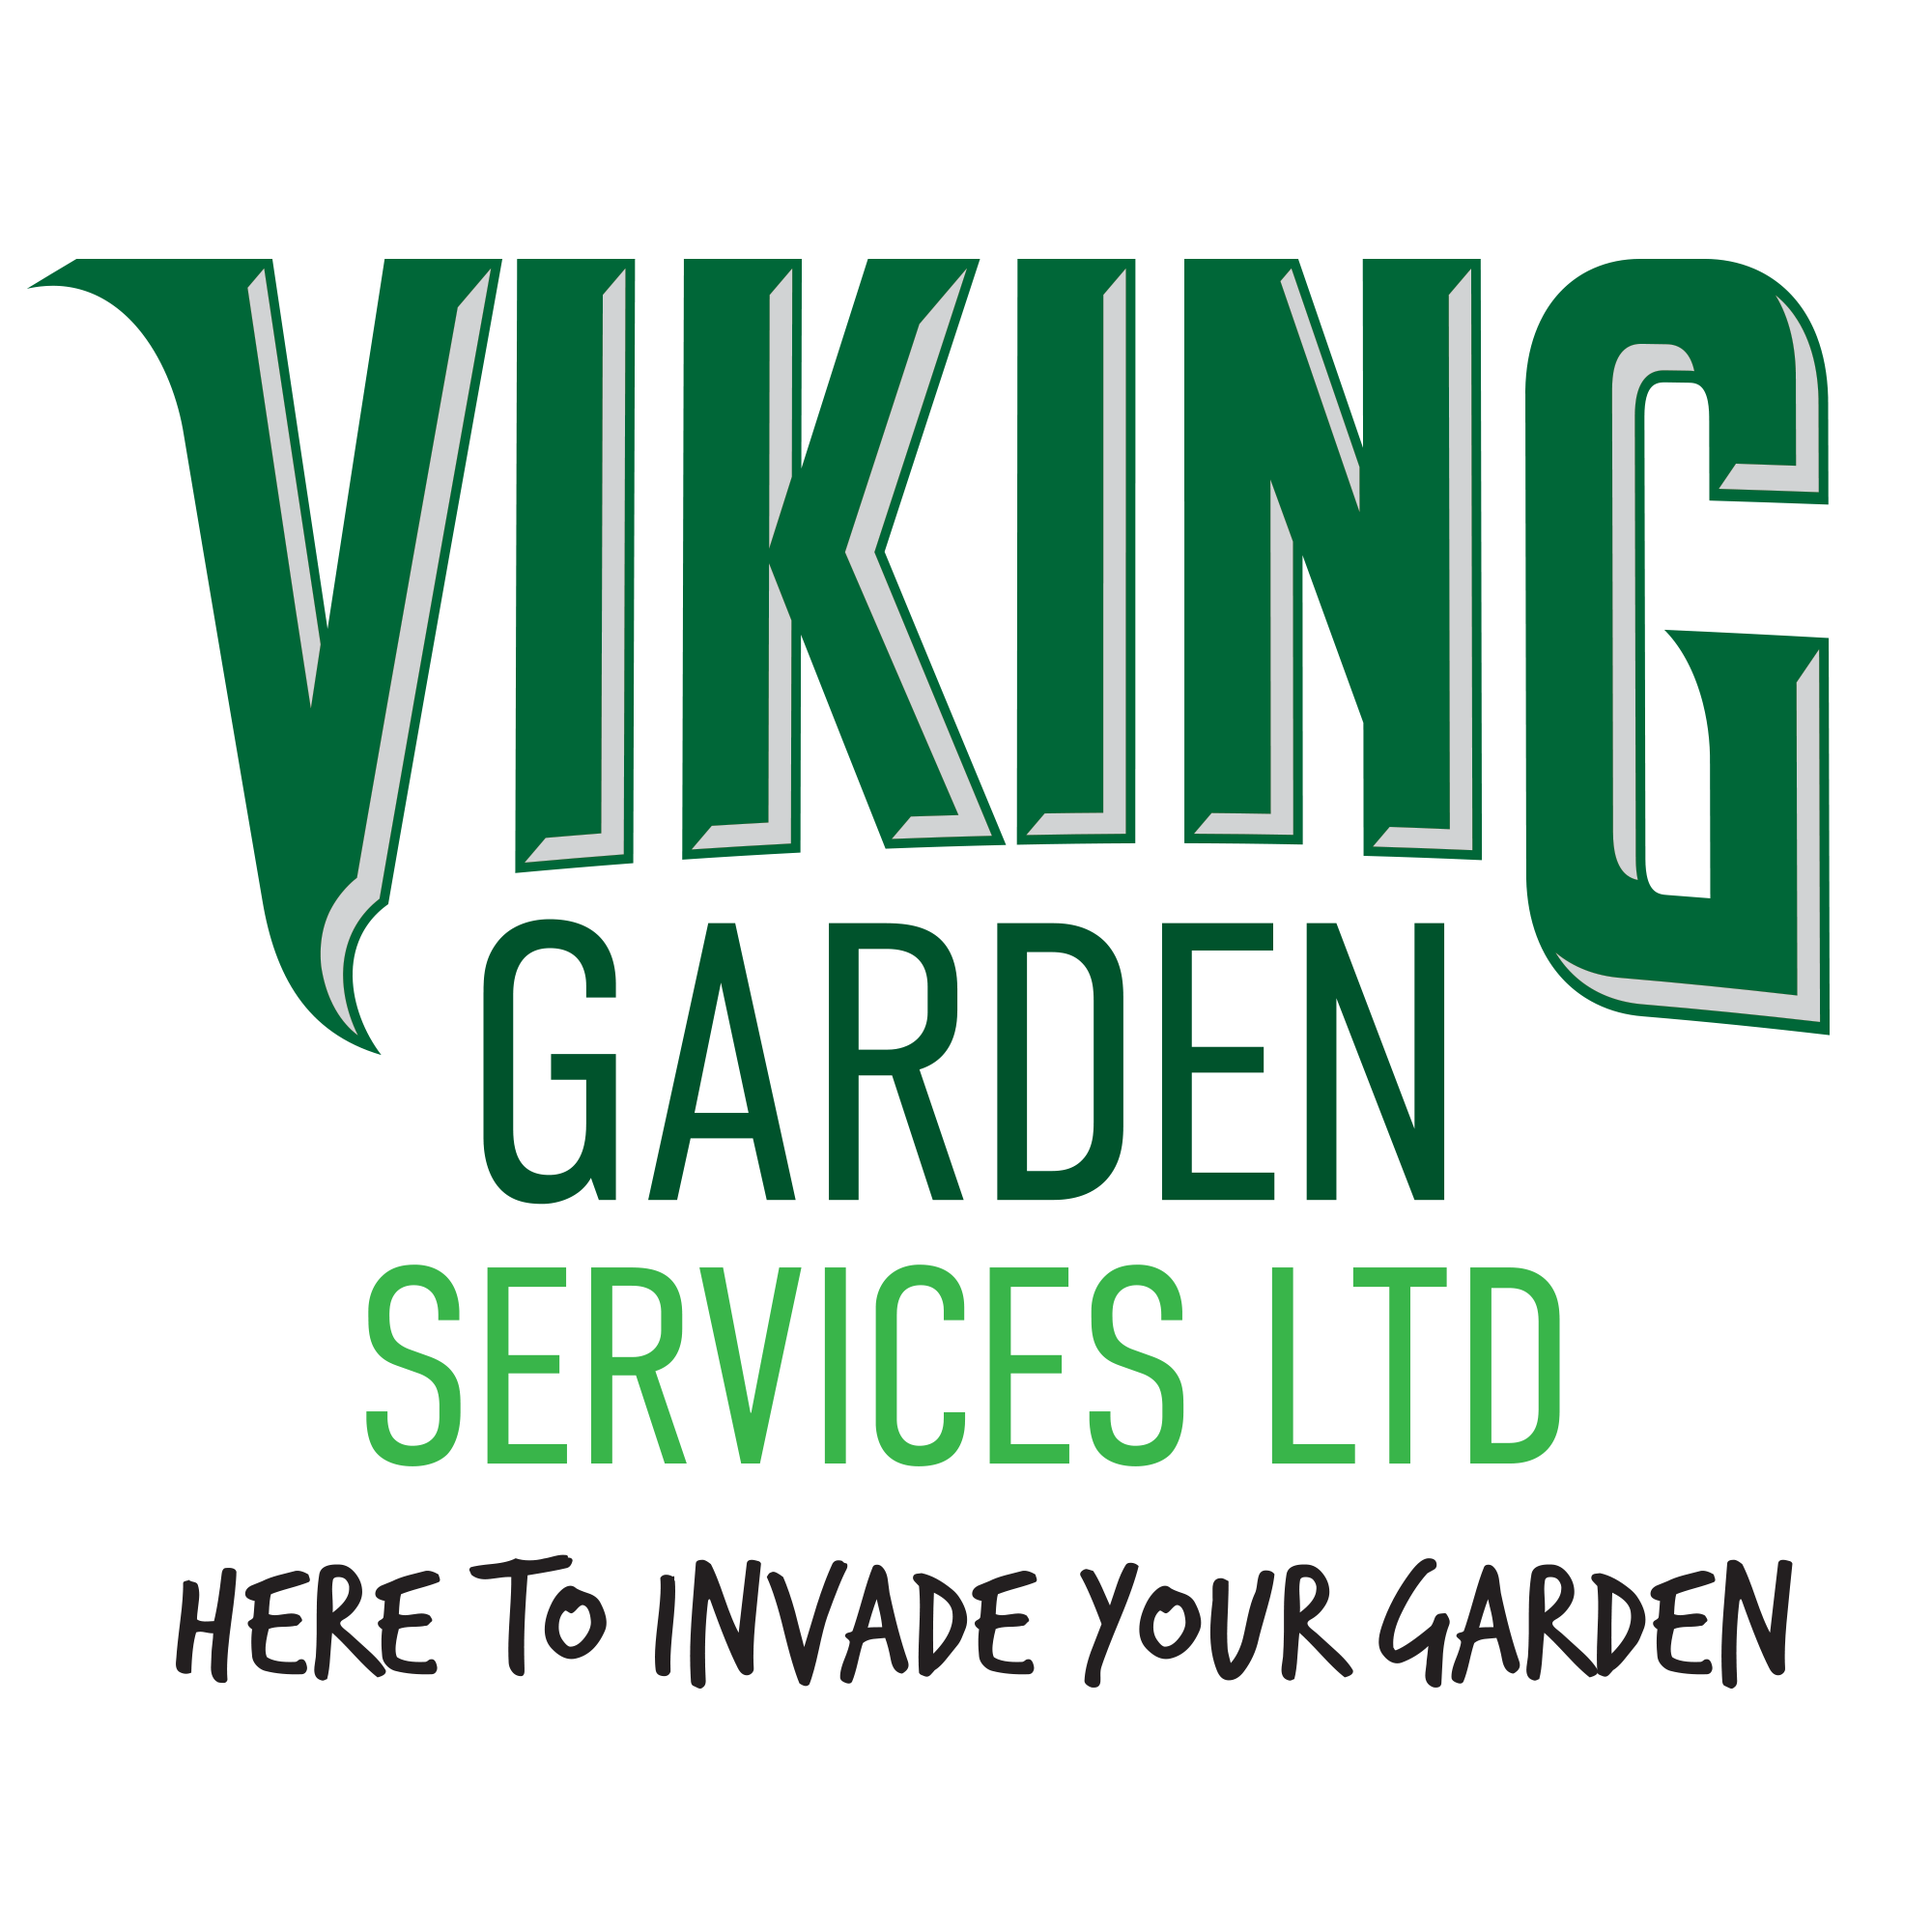 VIKING GARDEN SERVICES LTD